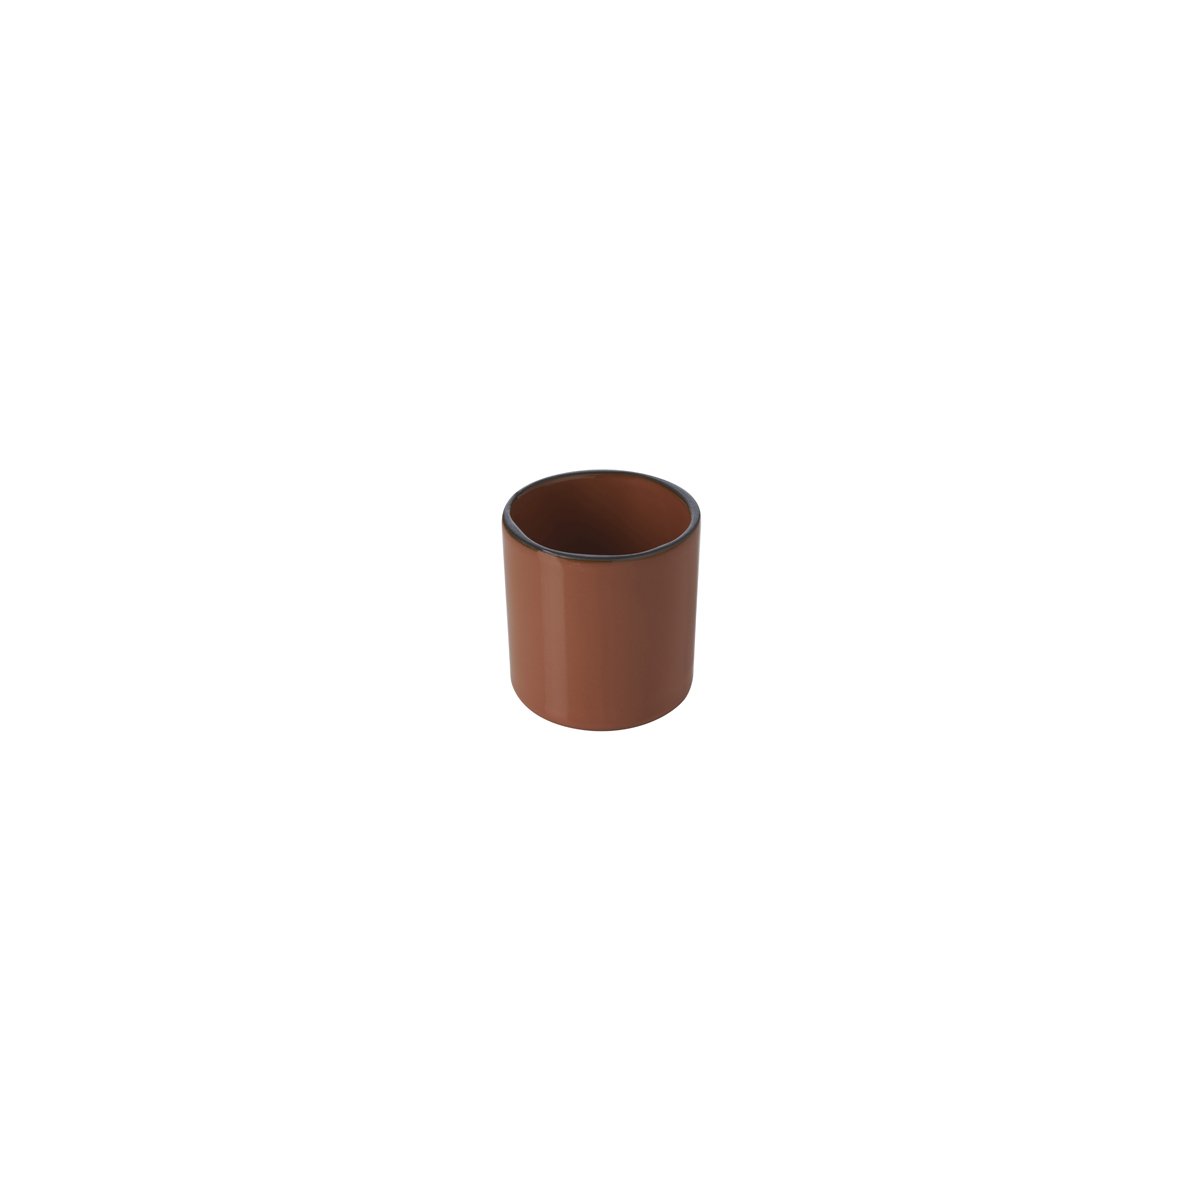 RV652690 Revol Caractere Cinnamon Espresso Cup 80ml Tomkin Australia Hospitality Supplies